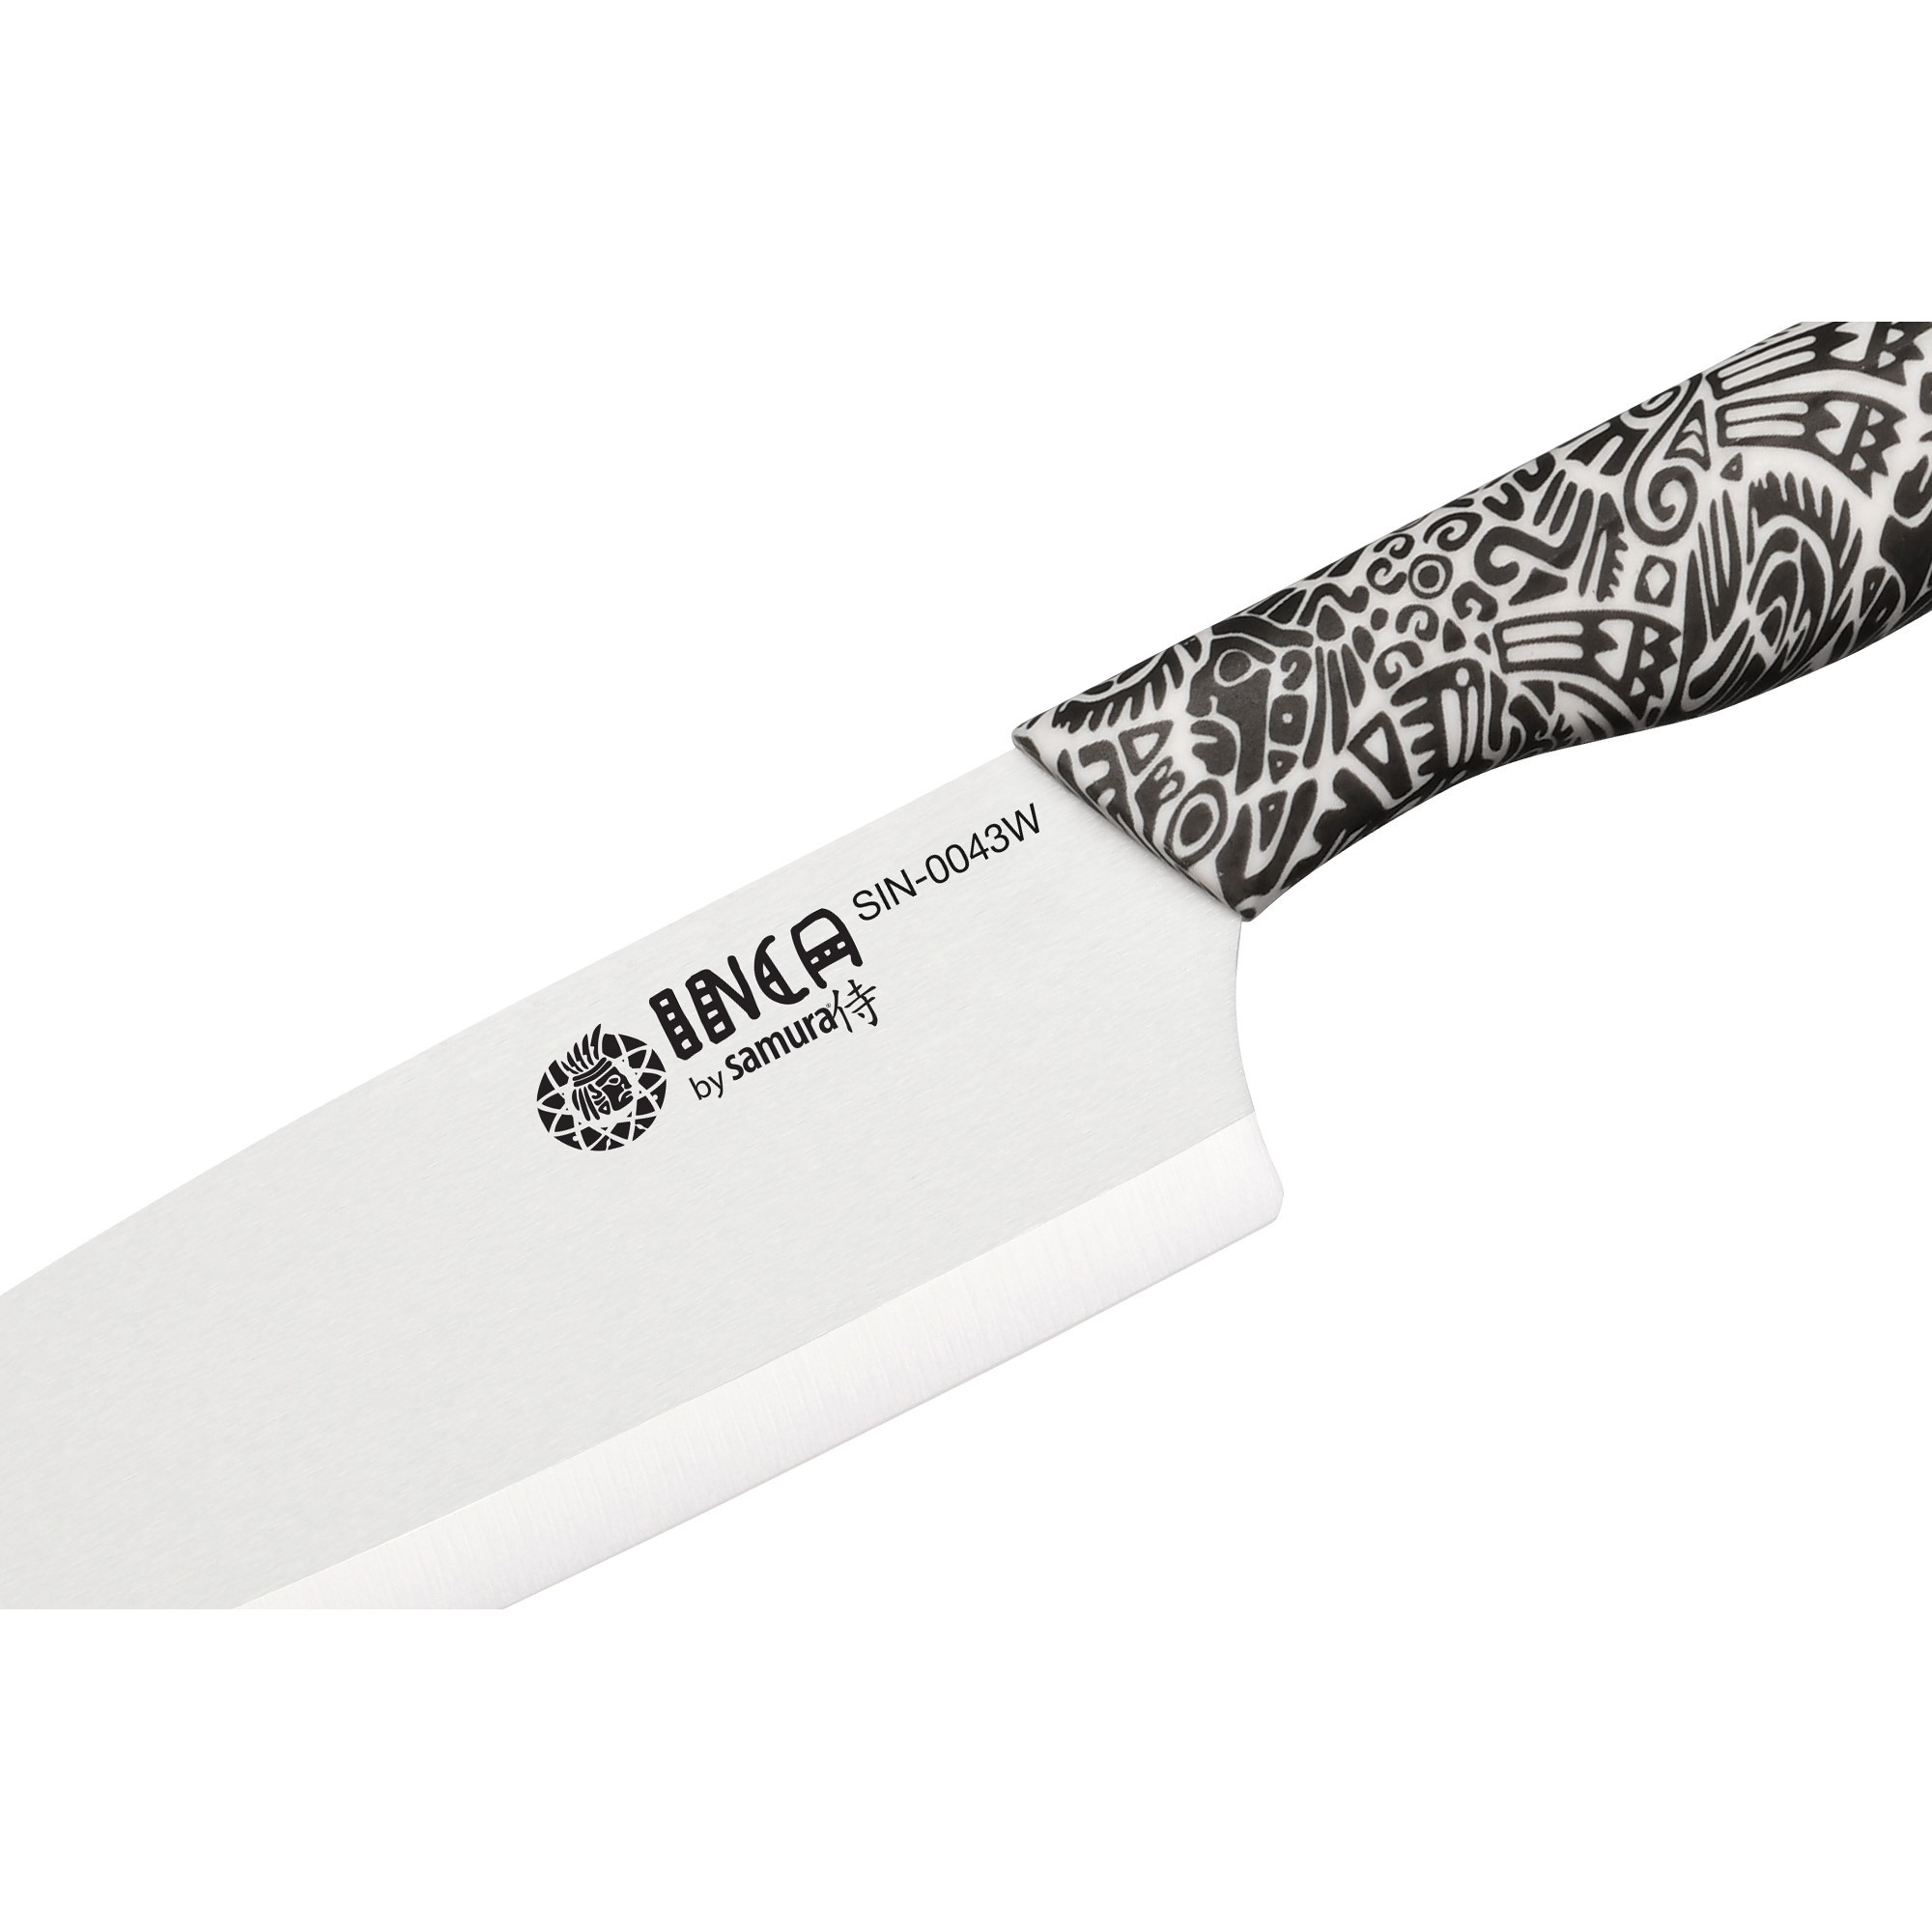 Нож кухонный накири Samura Inca 165 мм, белая циркониевая керамика, рукоять пластик - фото 3